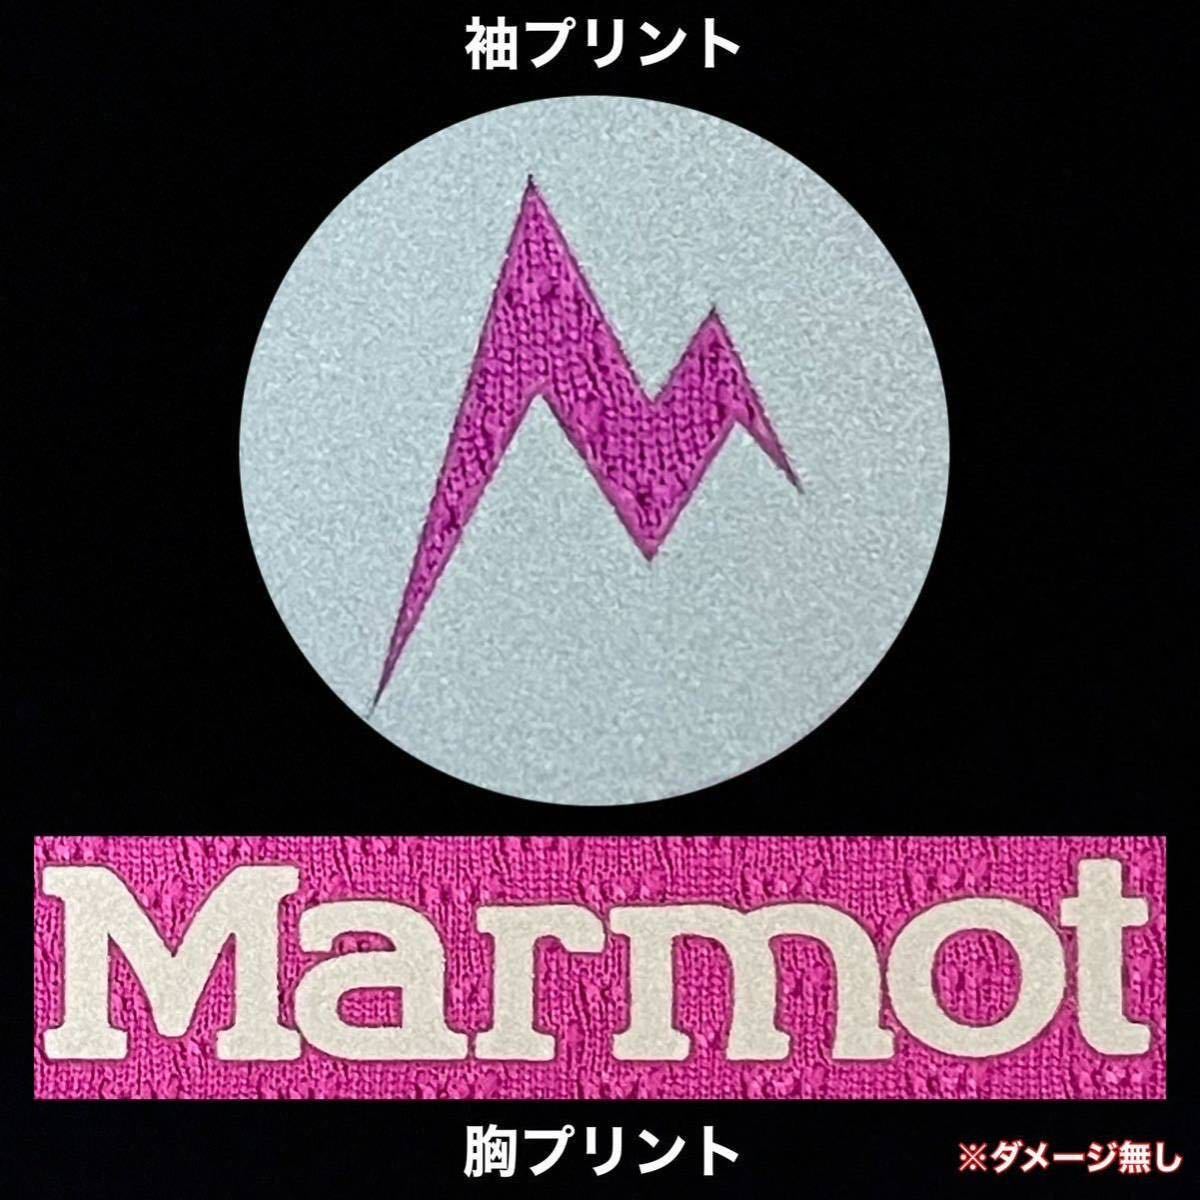 超美品 Marmot(マーモット)レディース ジップ シャツ S(T155.B83cm)半袖 ドライ 使用3回 パープル アウトドア スポーツ (株)デサント